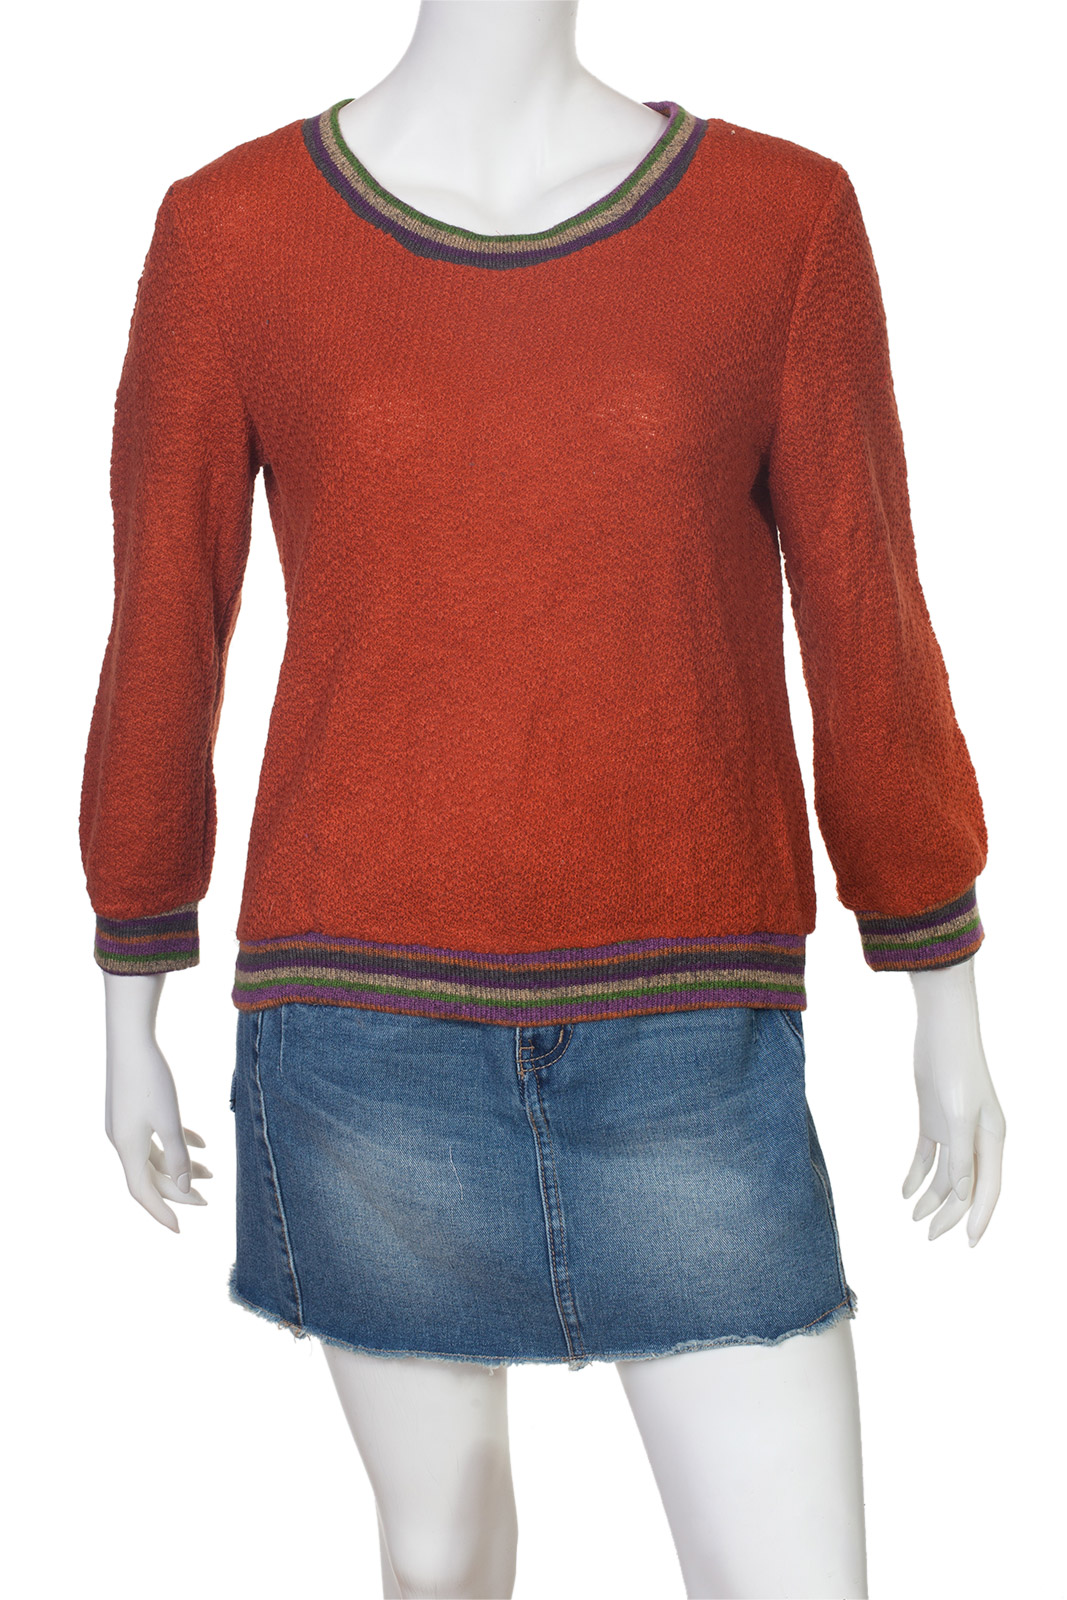 Стильная красная кофта-свитер с зауженным руквом